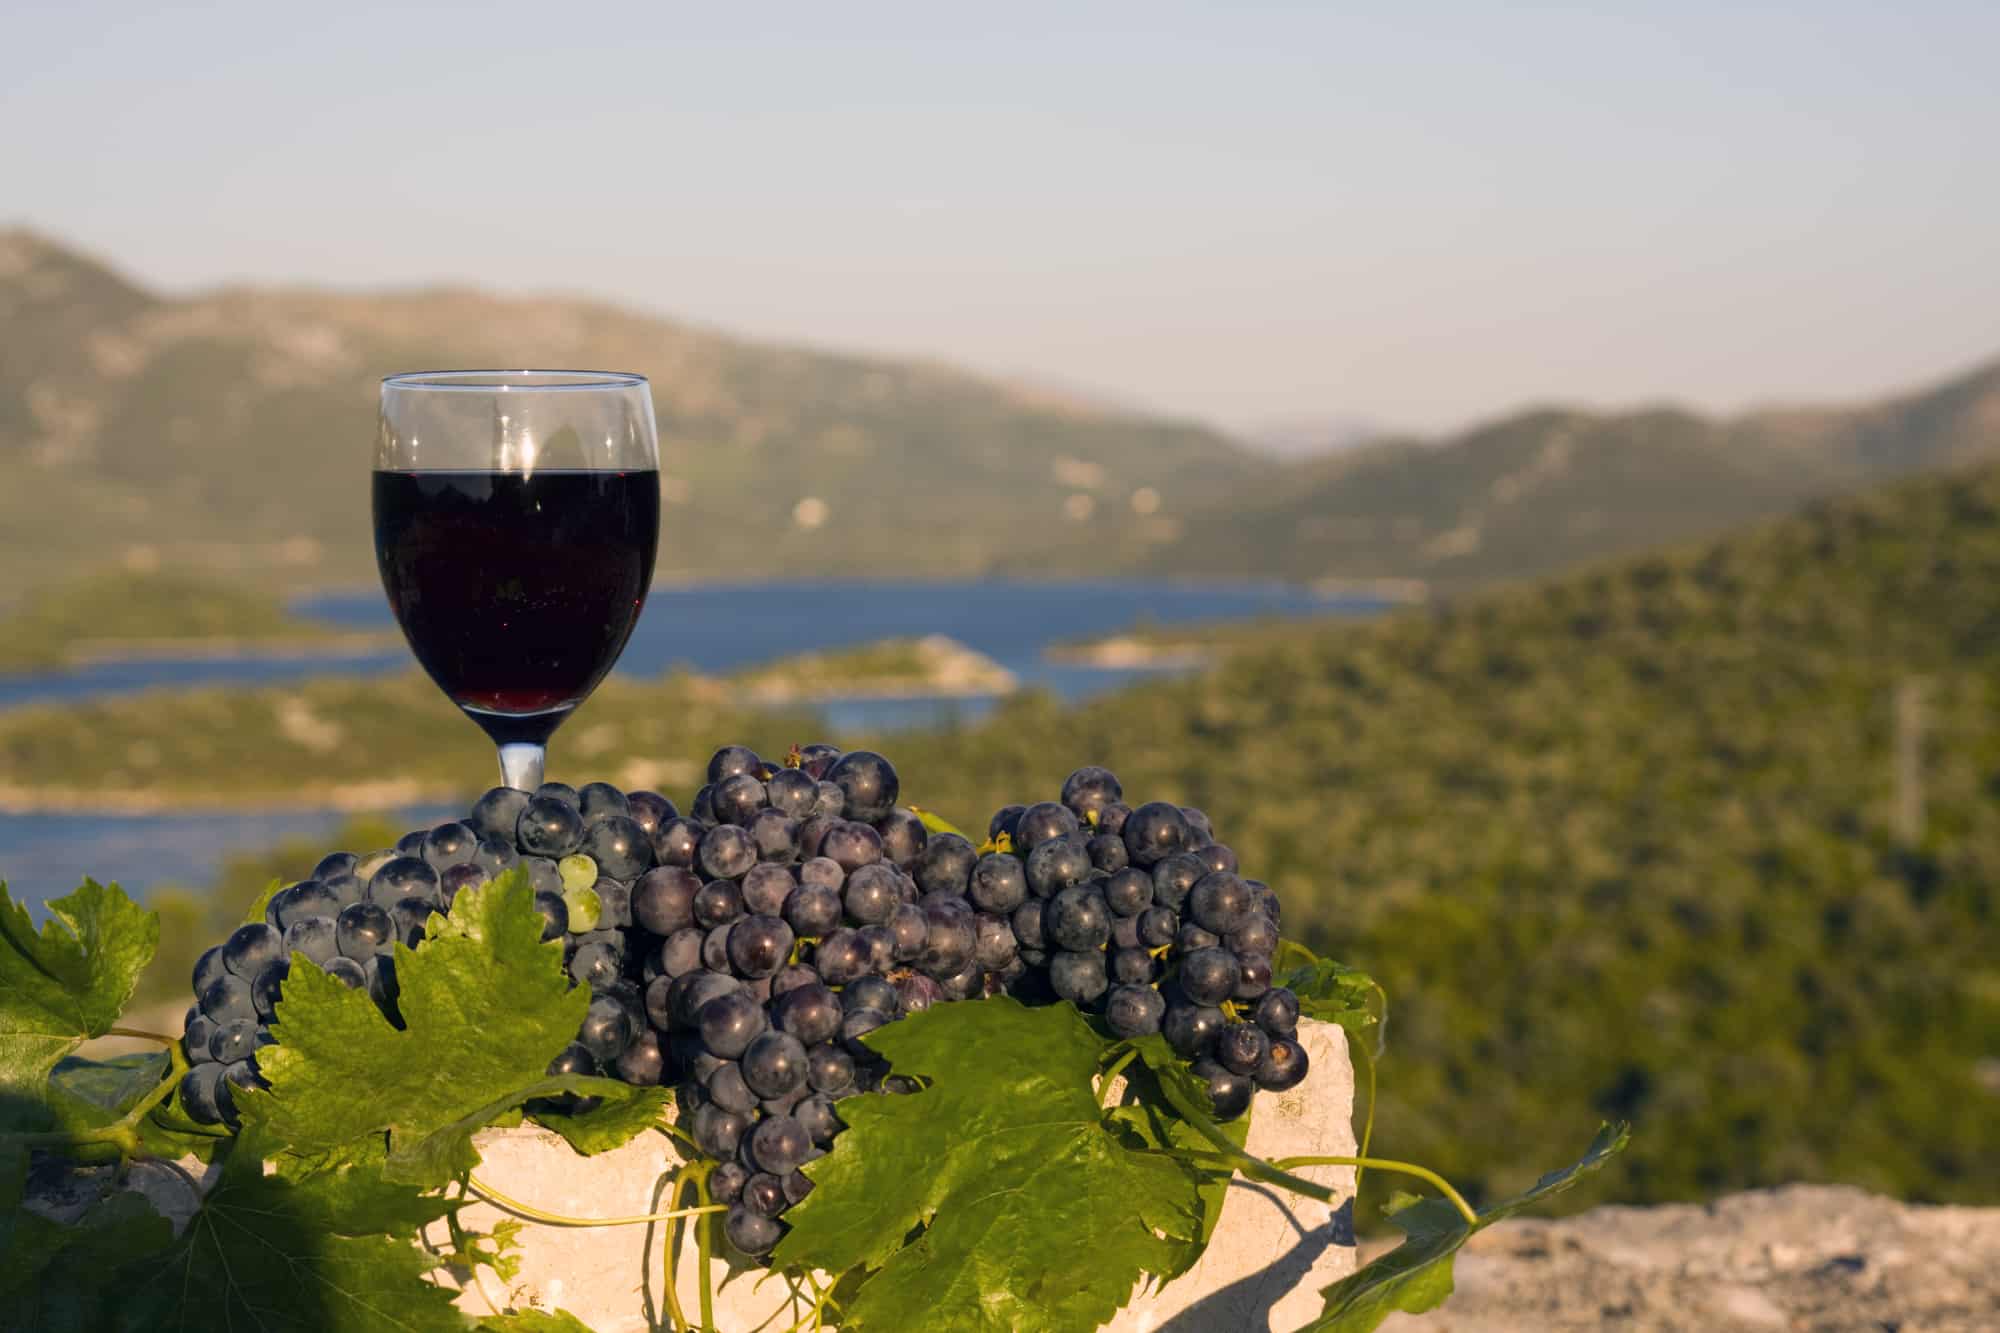 Croatian Wine